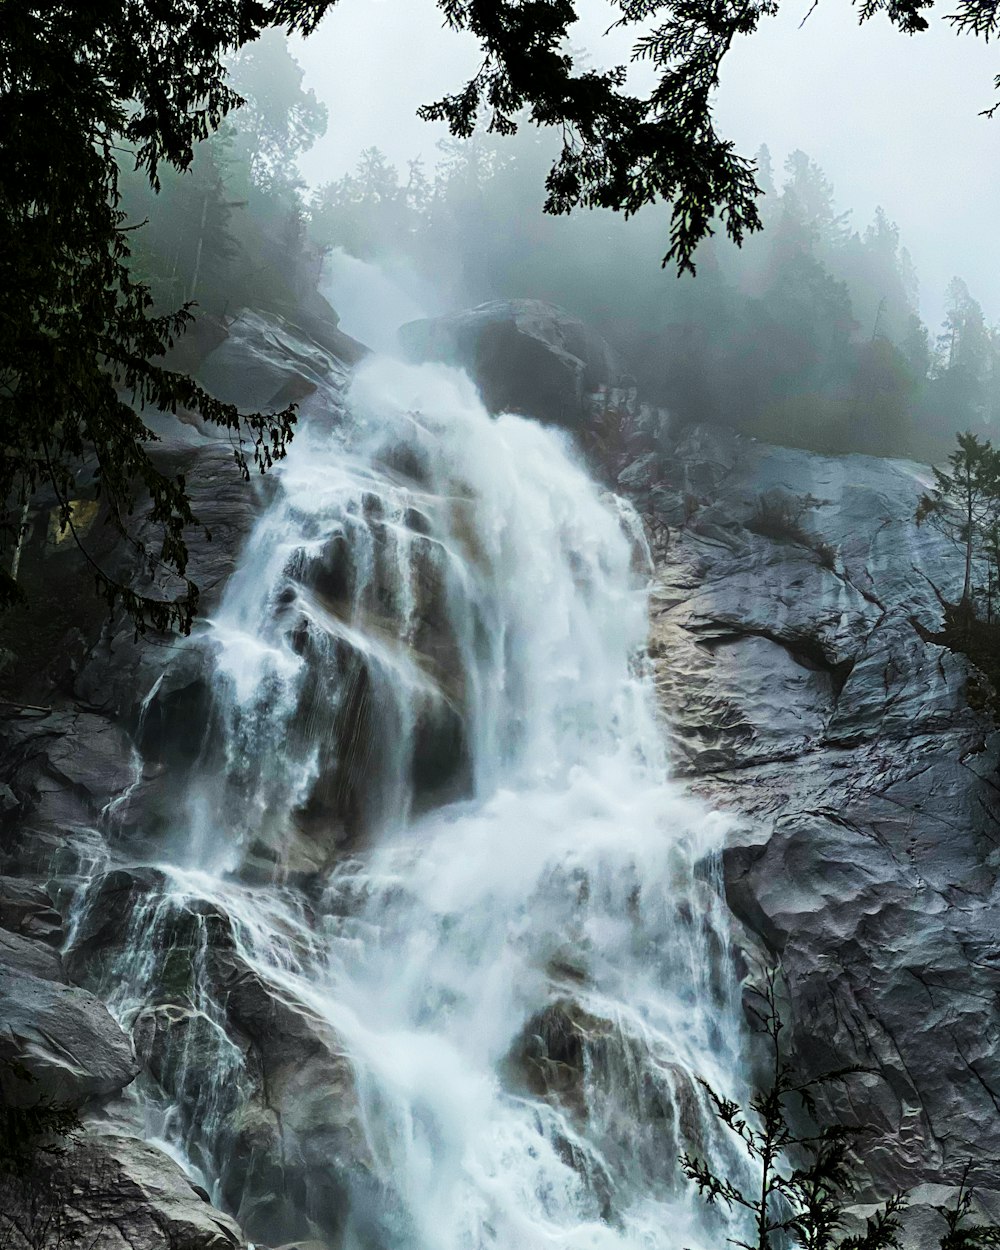 Una cascada en medio de un bosque en un día de niebla